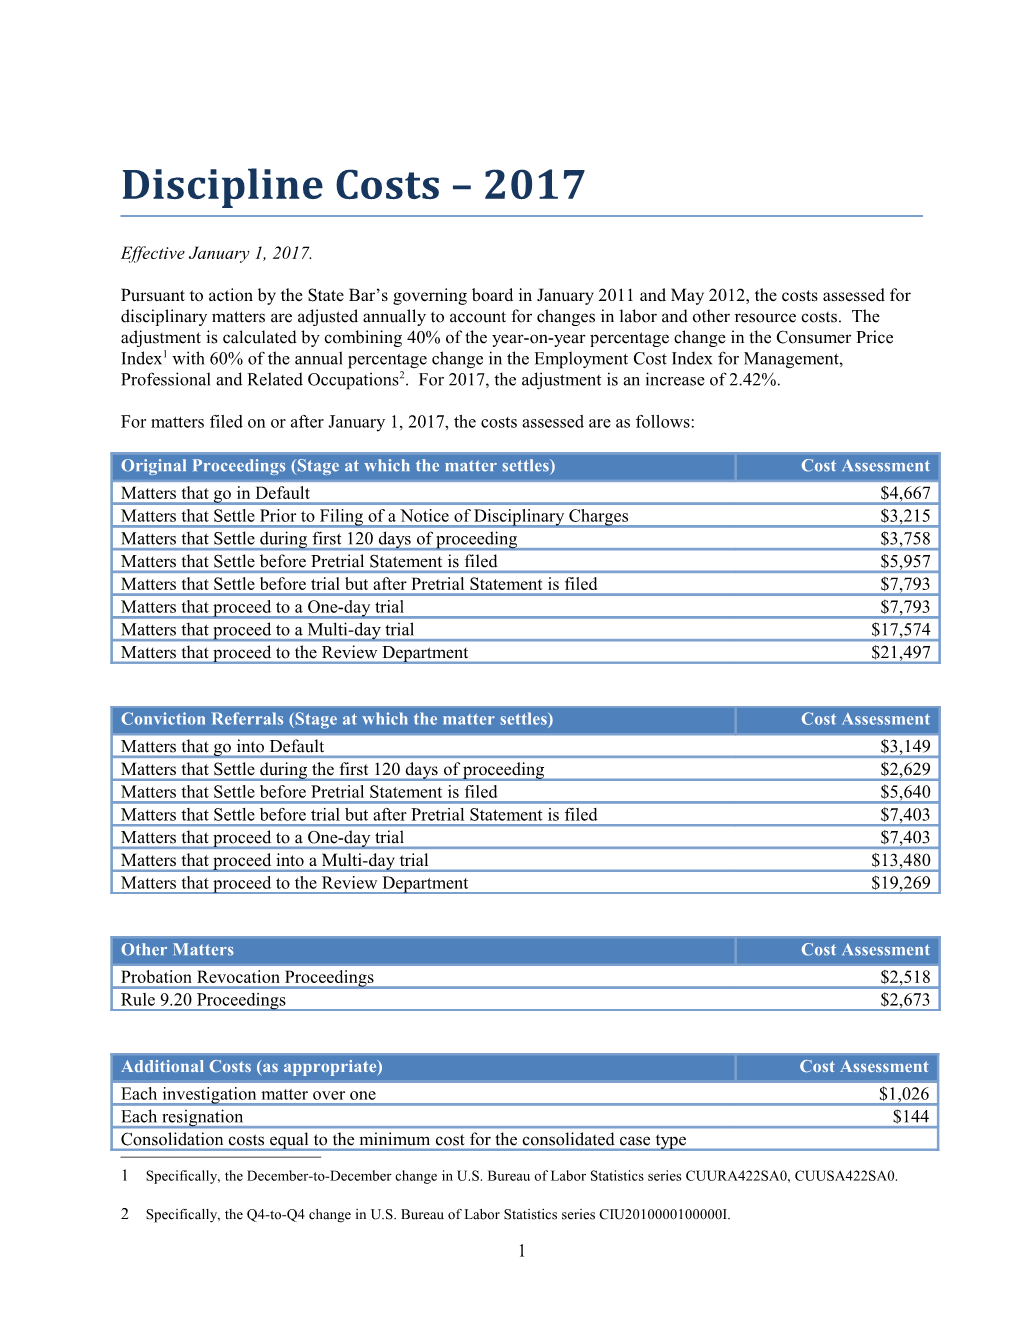 Discipline Costs 2017